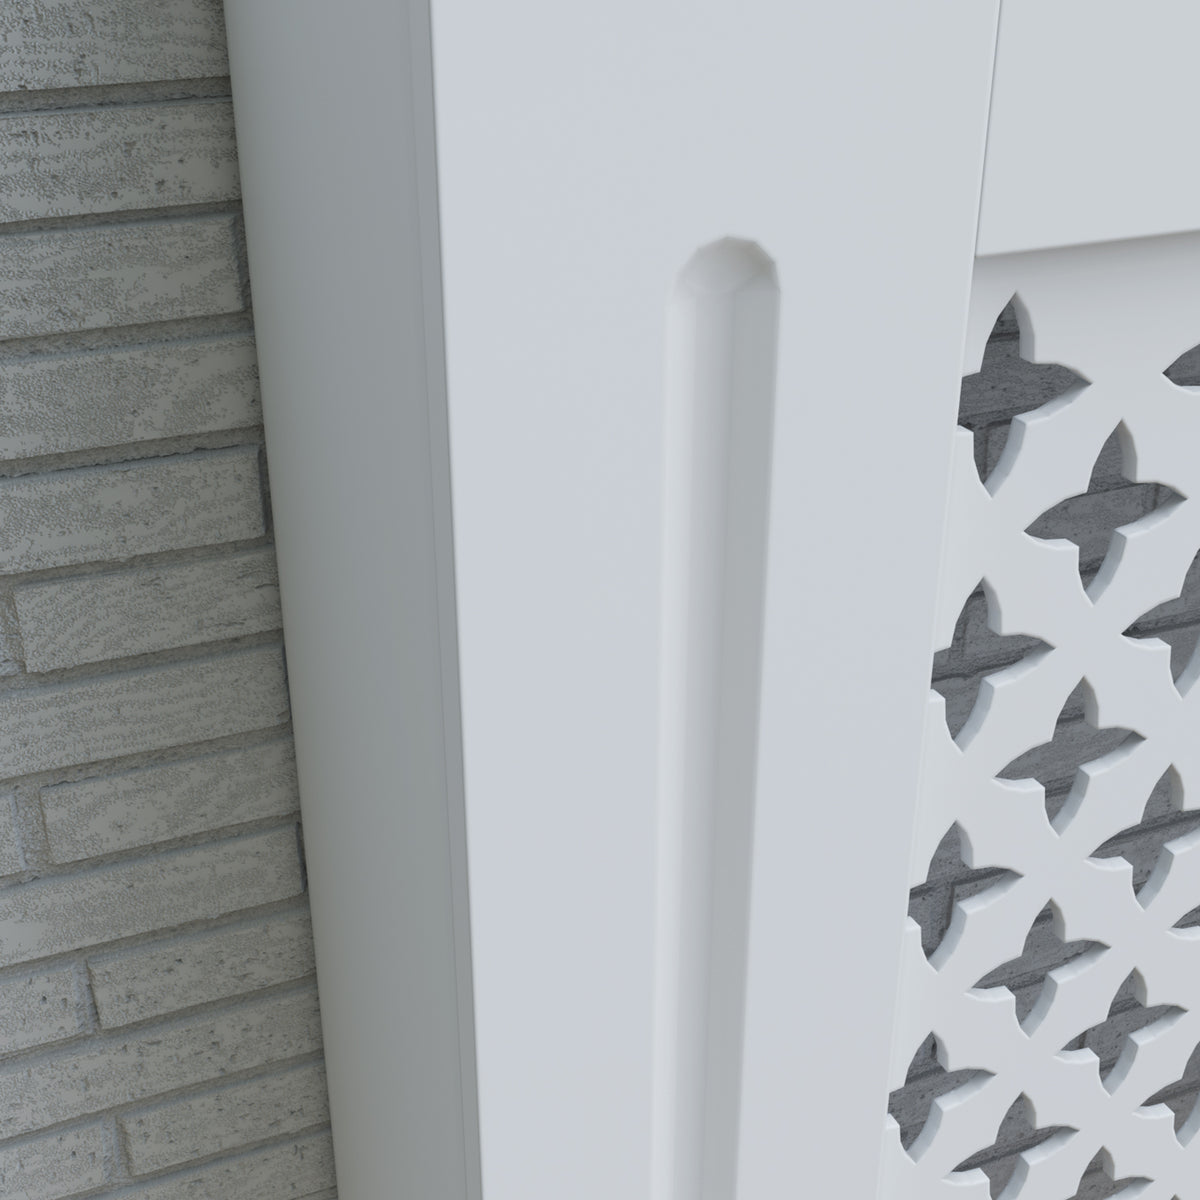 SONNI Heizkörperverkleidung Abdeckung Heizungsverkleidung weiß mit Kreuzgitter für Wohnzimmer Flur Diele B1520 x T190 x H815 mm